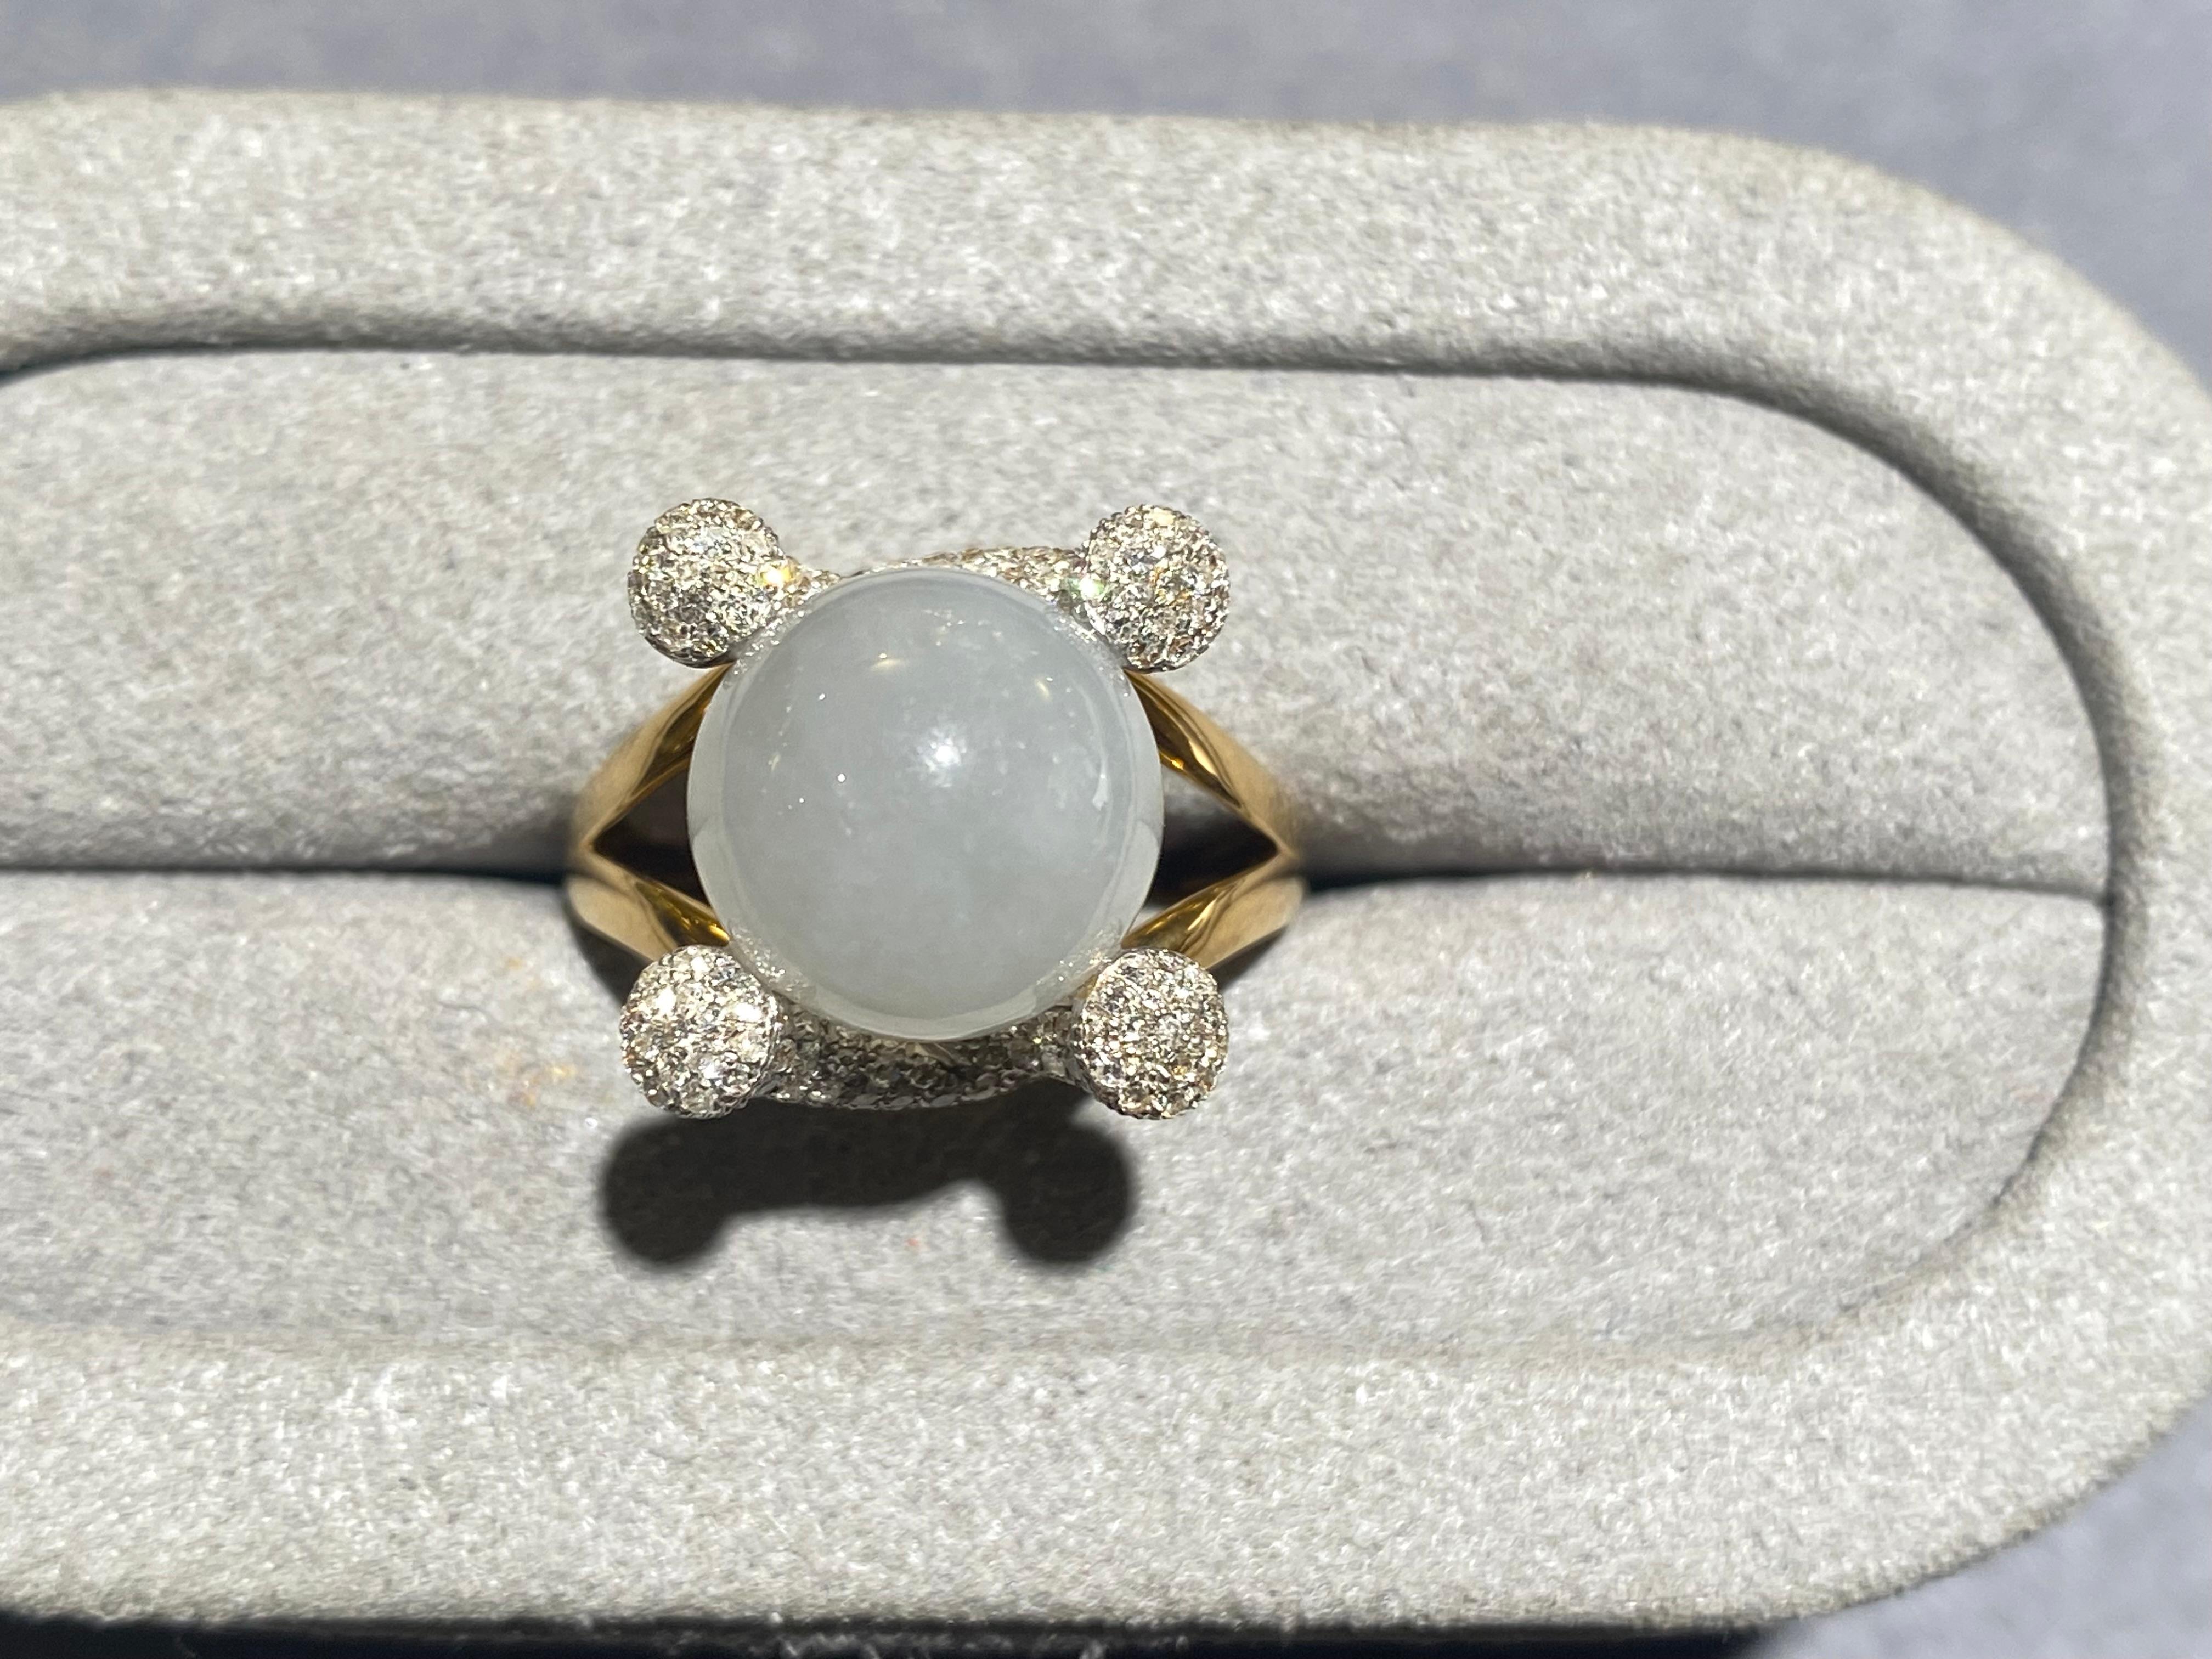 Bague en jadéite et diamant de type A de couleur lavande clair en or jaune 18k. La jadéite se présente sous la forme d'une perle et est sertie entre deux structures en forme de cornes incrustées de diamants. Il s'agit d'un design très unique et à la